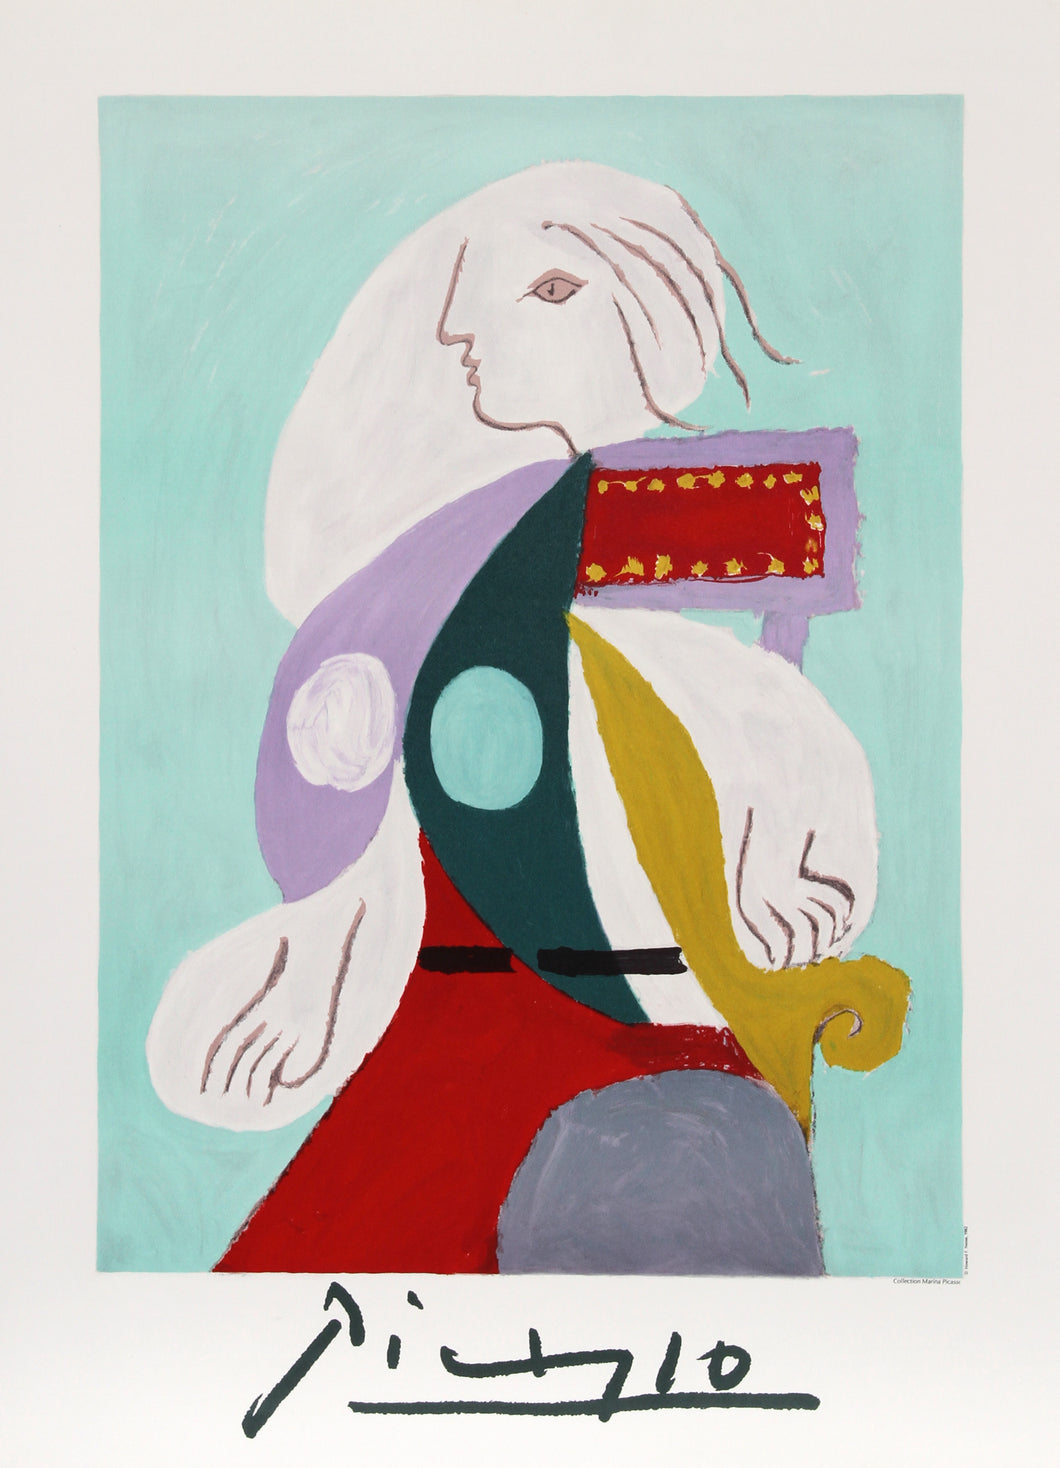 Pablo Picasso, Femme a la Robe Multicolore, Lithograph